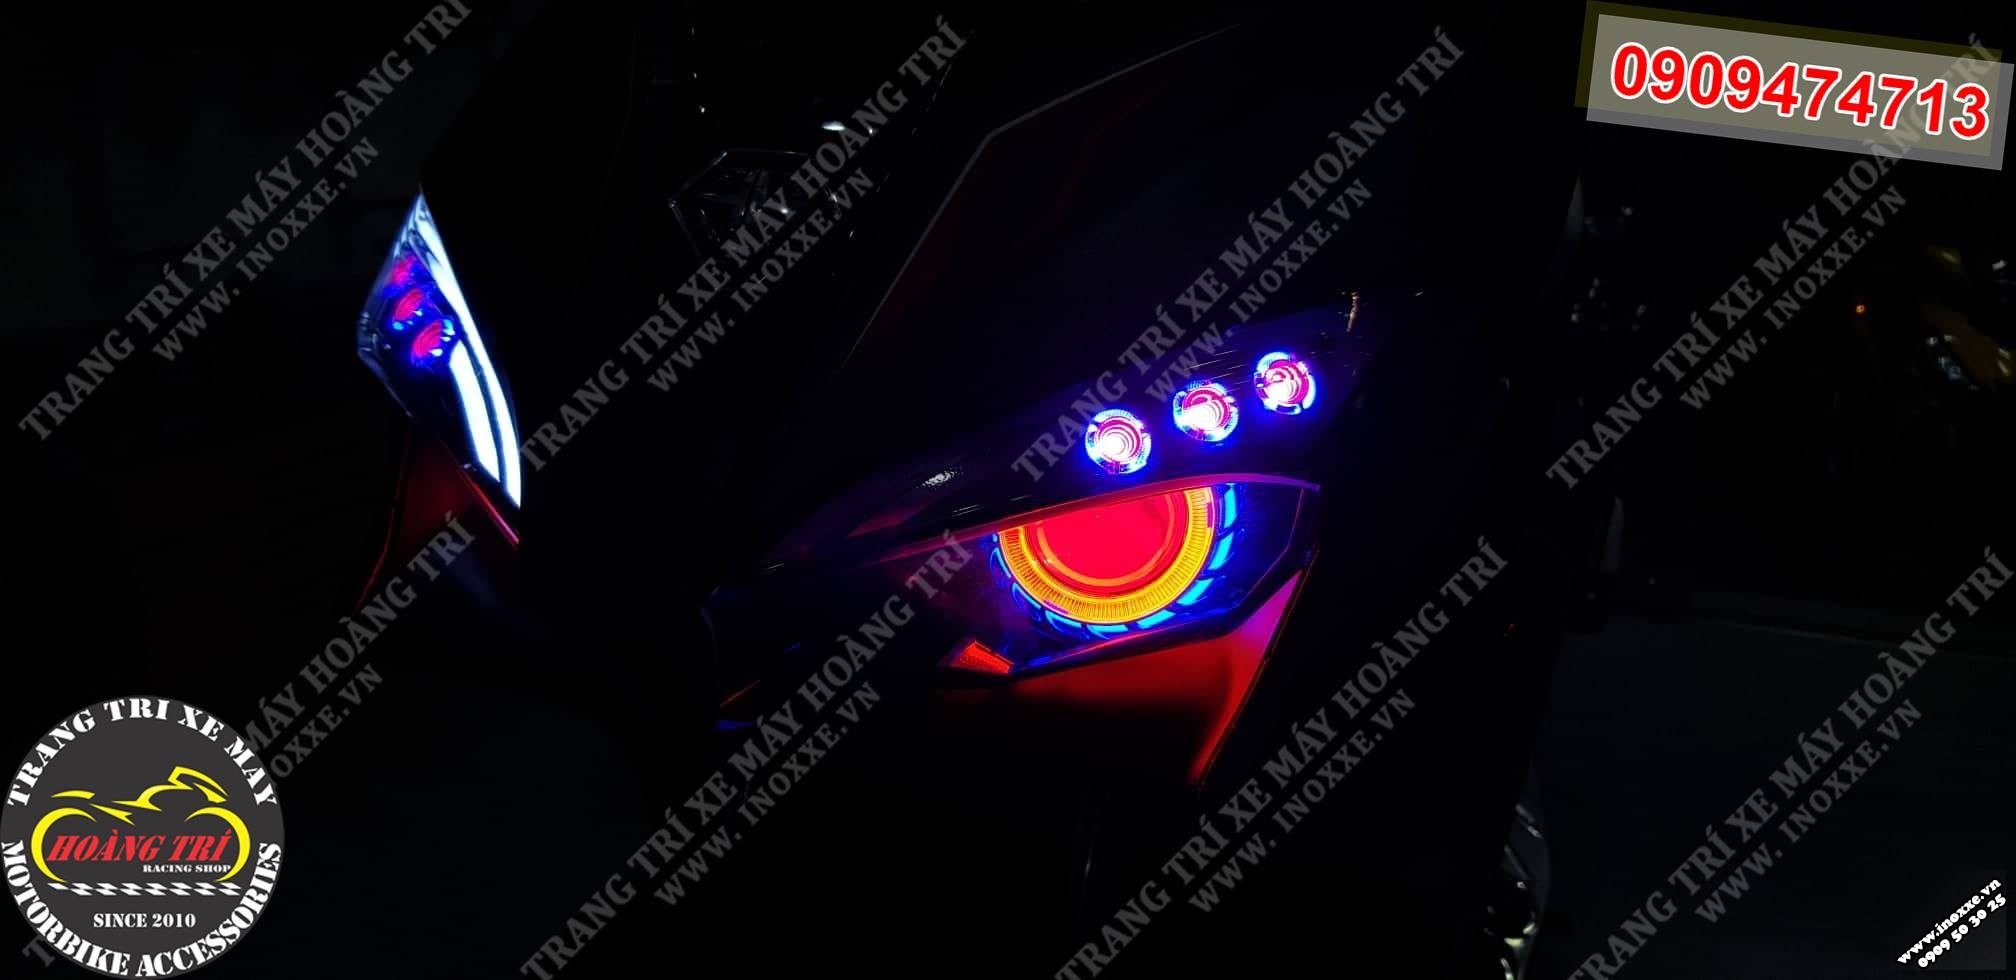 Một góc khác Đèn mắt cú cho Airblade 2016 khi trời tối